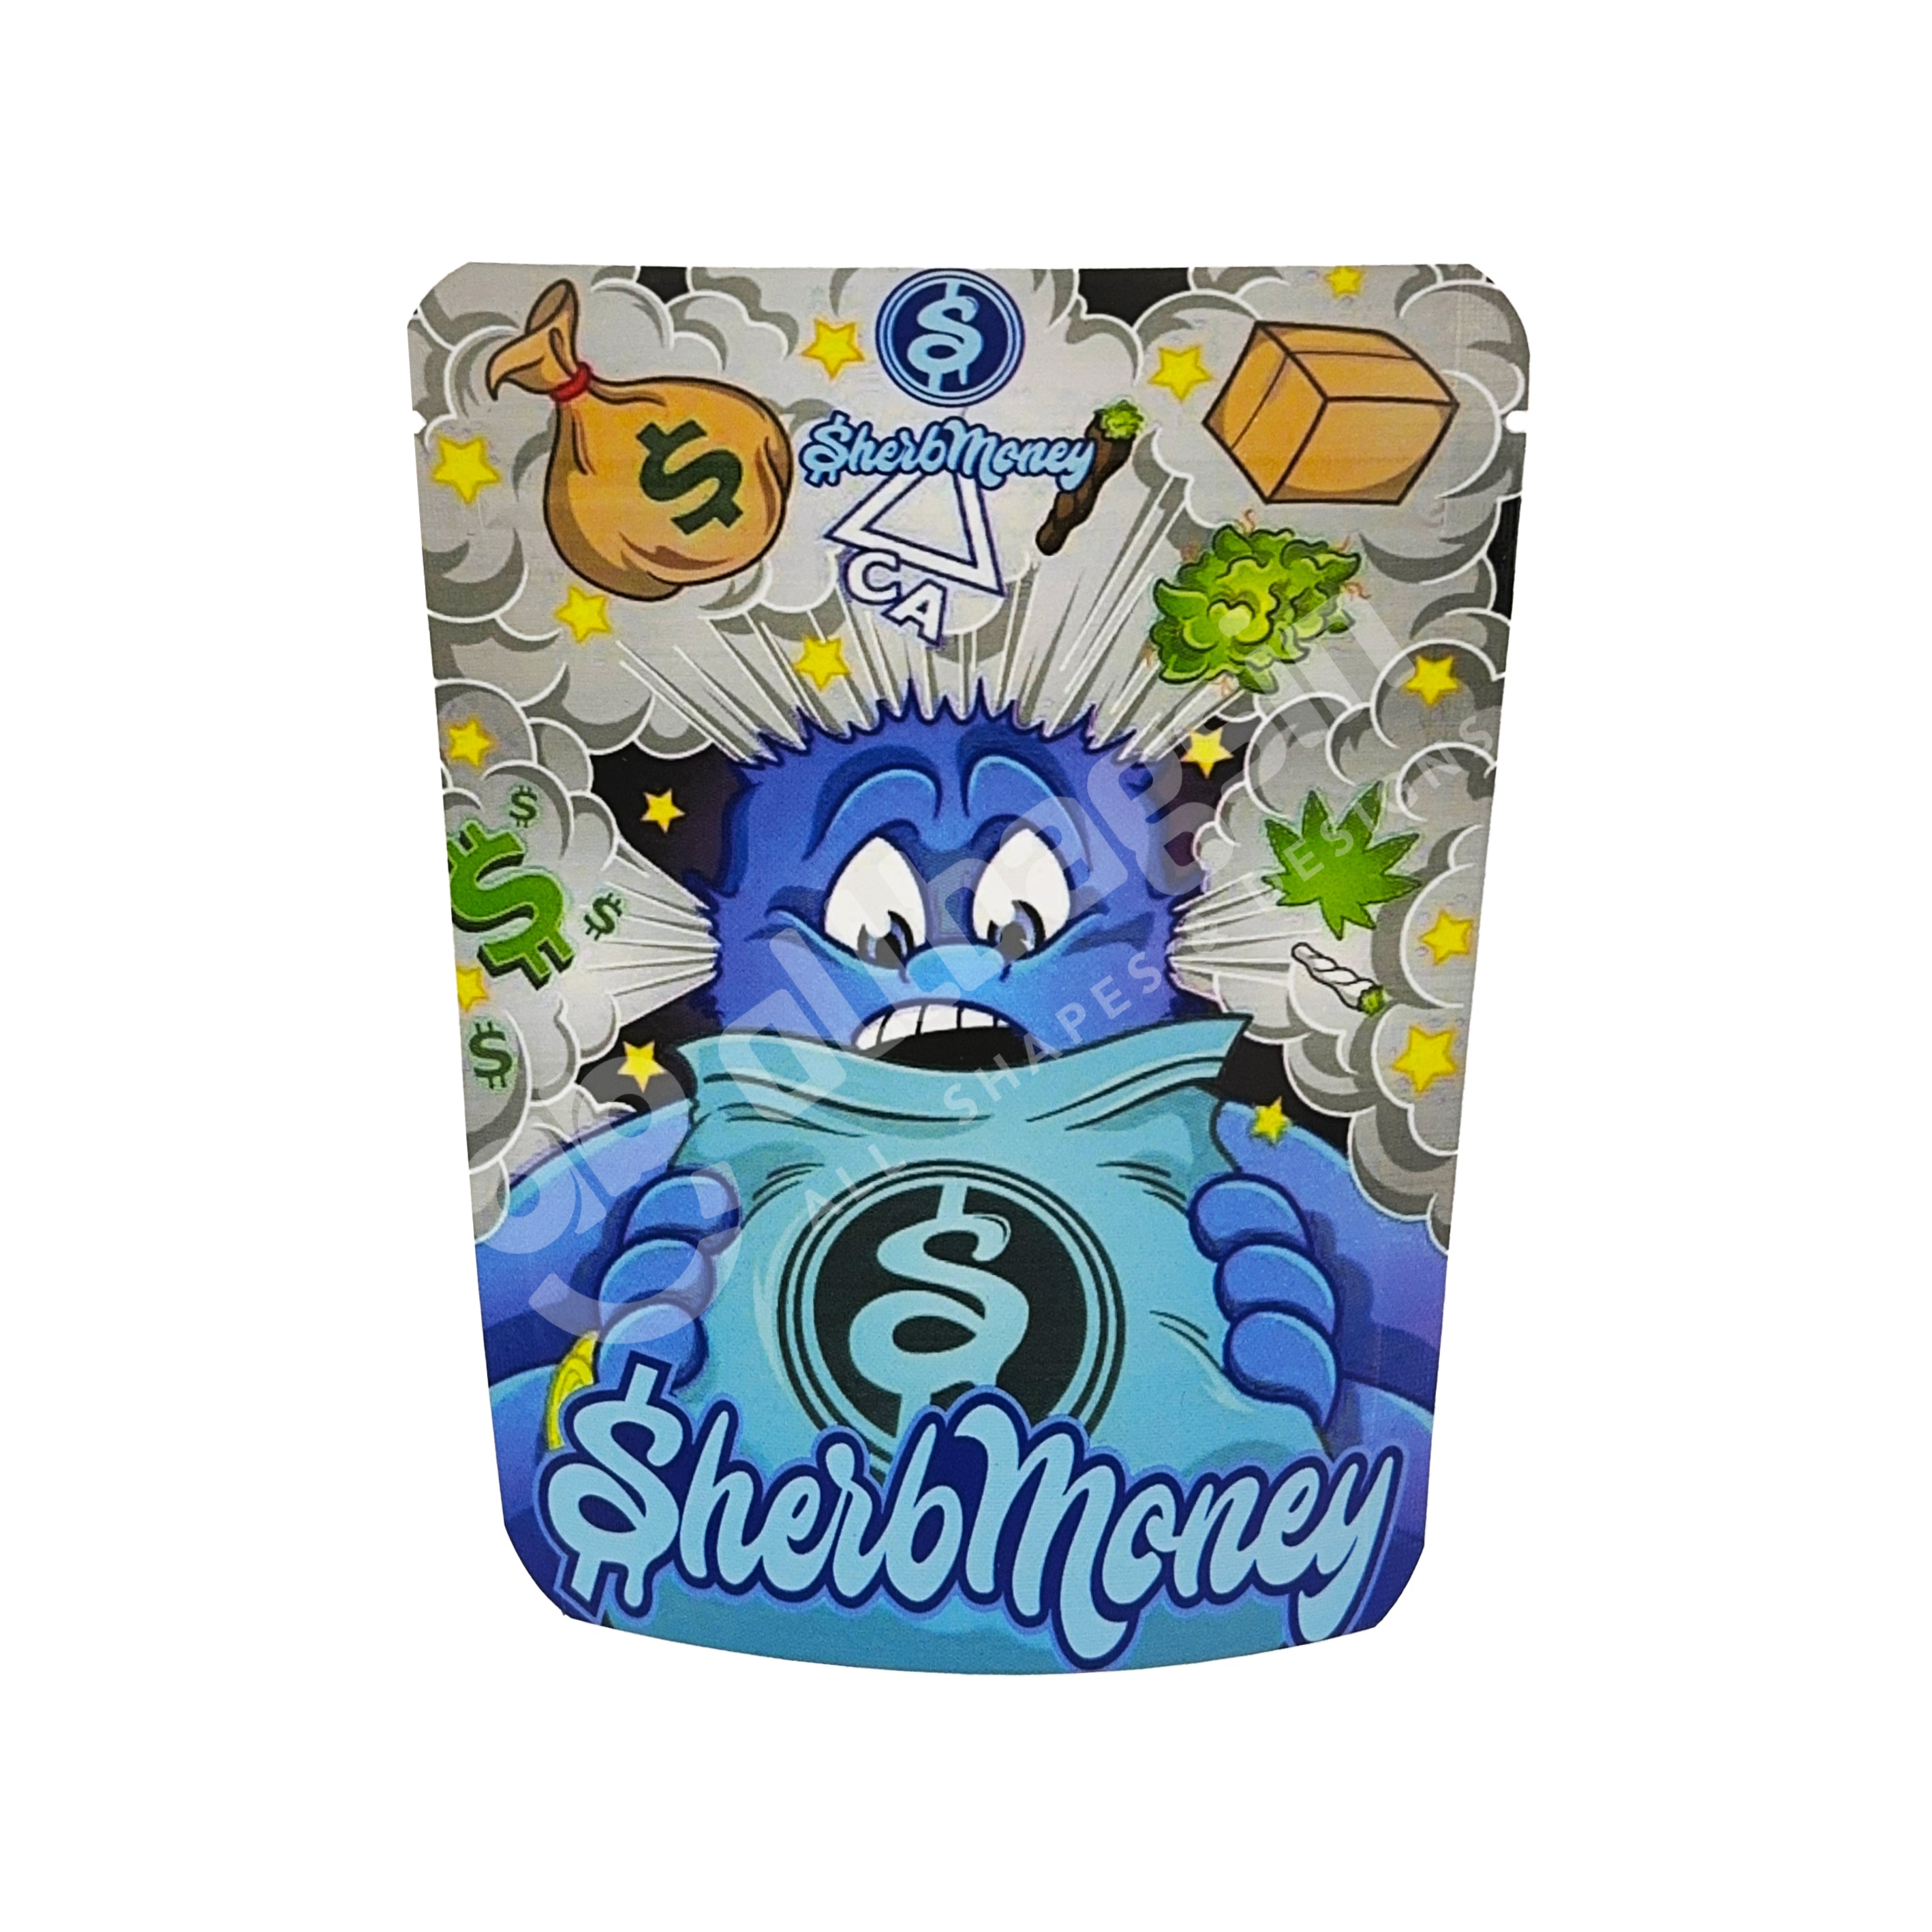 Blue Sherb Money 3.5g Mylar Bag